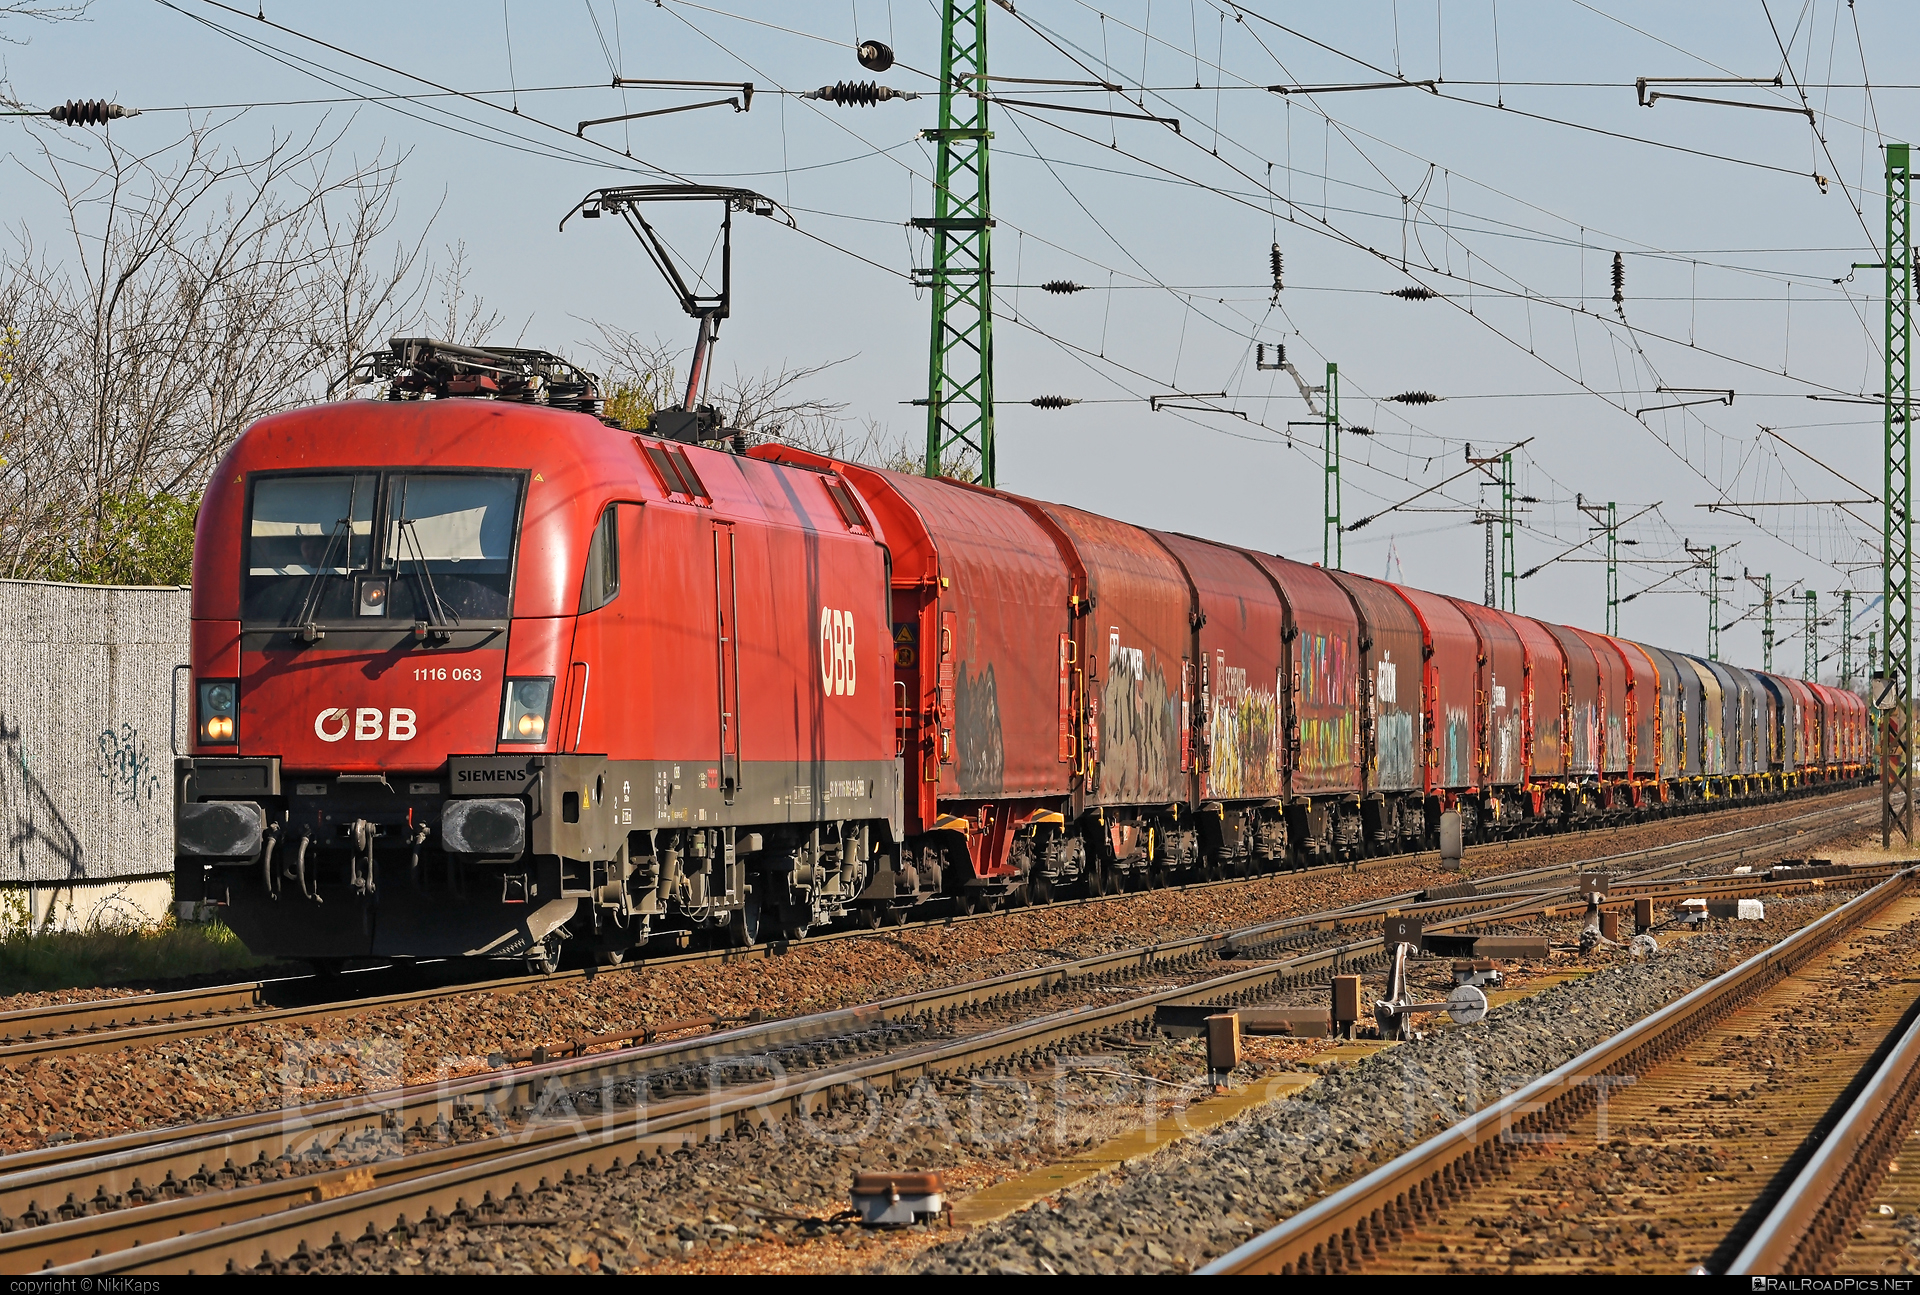 Siemens ES 64 U2 - 1116 063 operated by Rail Cargo Austria AG #es64 #es64u2 #eurosprinter #graffiti #obb #osterreichischebundesbahnen #rcw #siemens #siemensEs64 #siemensEs64u2 #siemenstaurus #taurus #tauruslocomotive